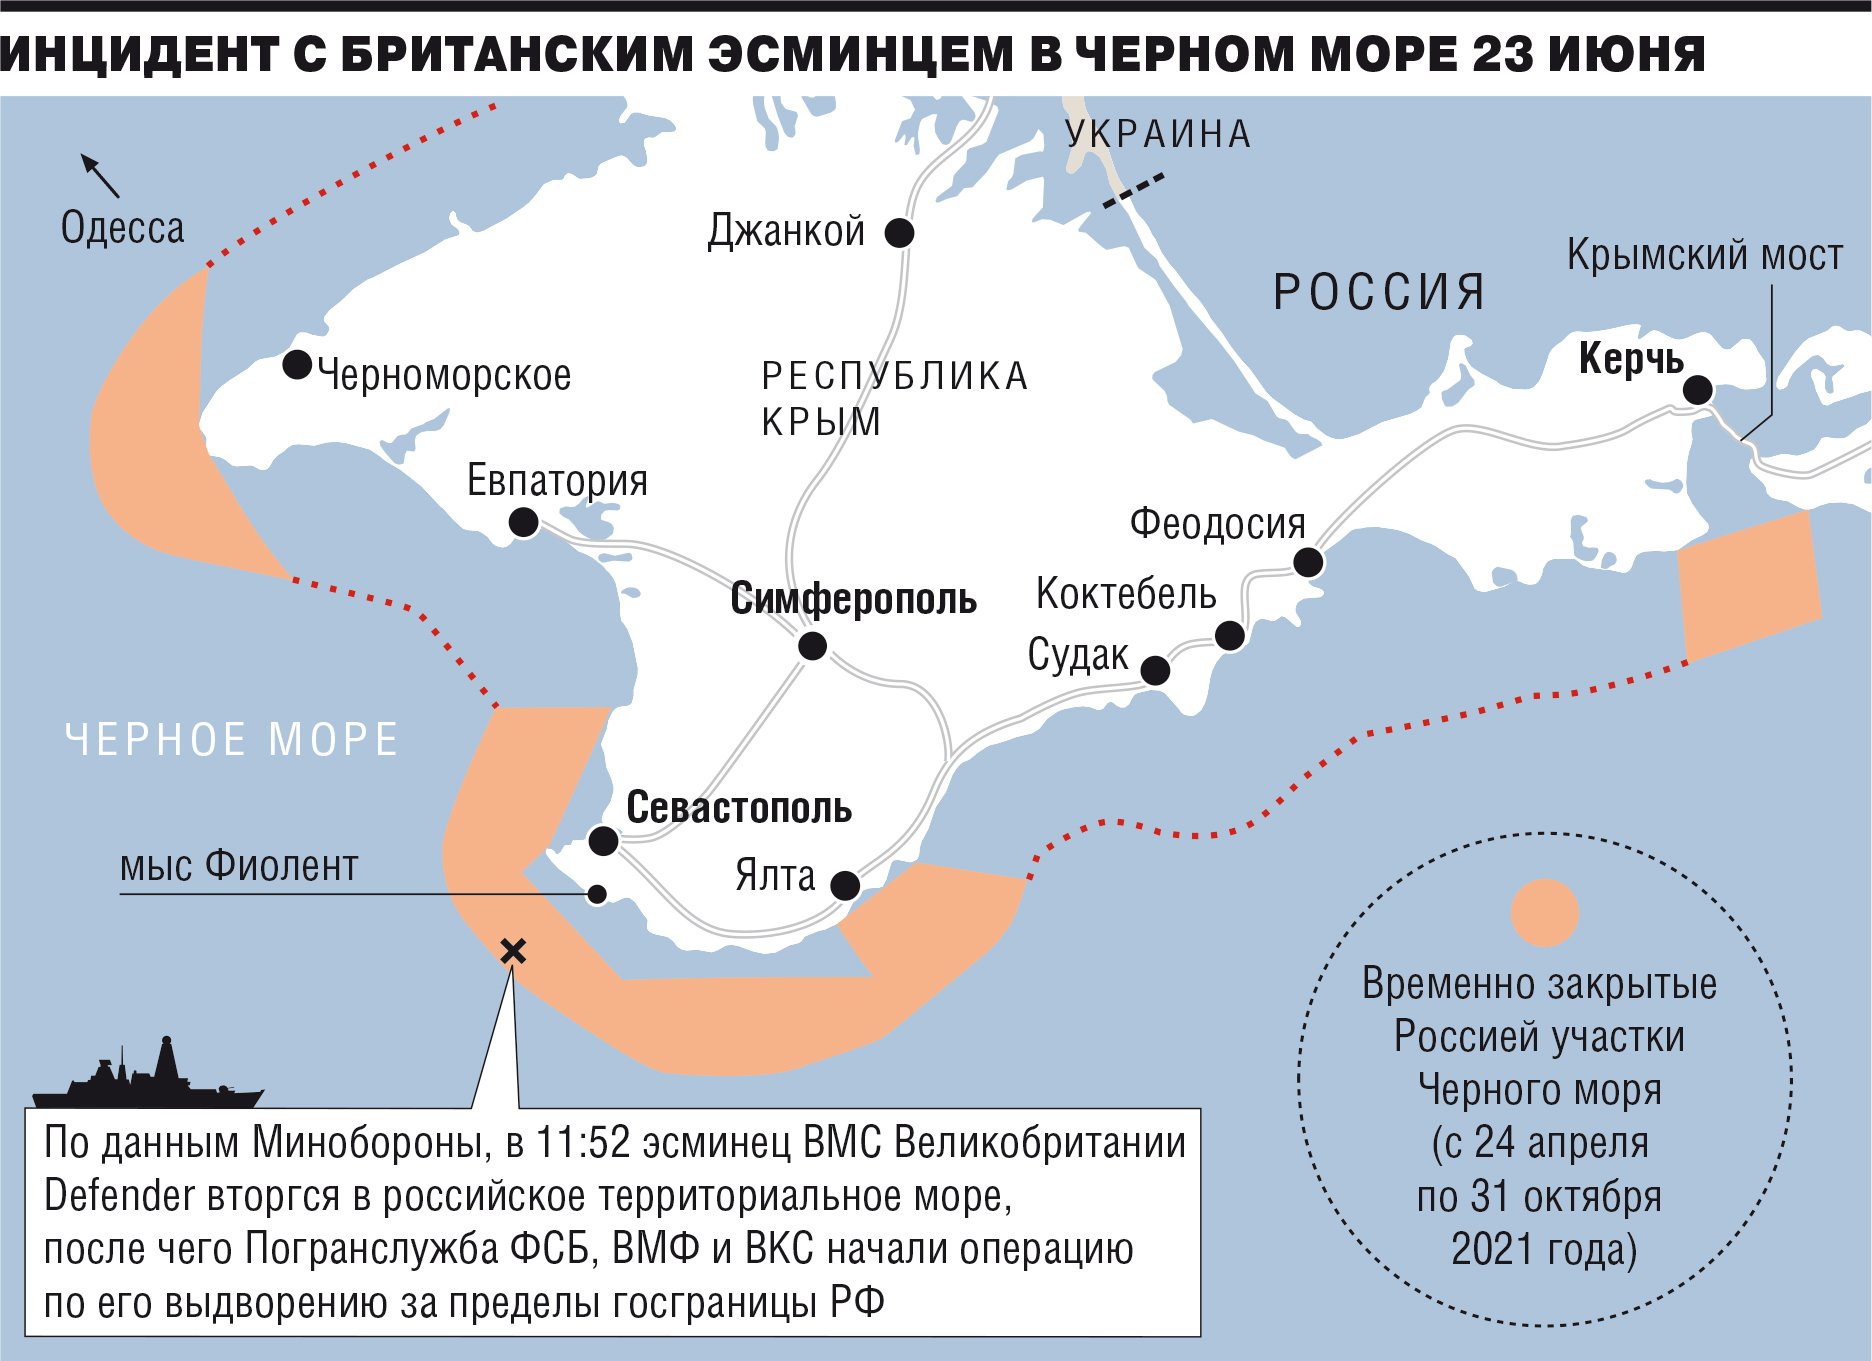 Территориальные воды РФ В черном море